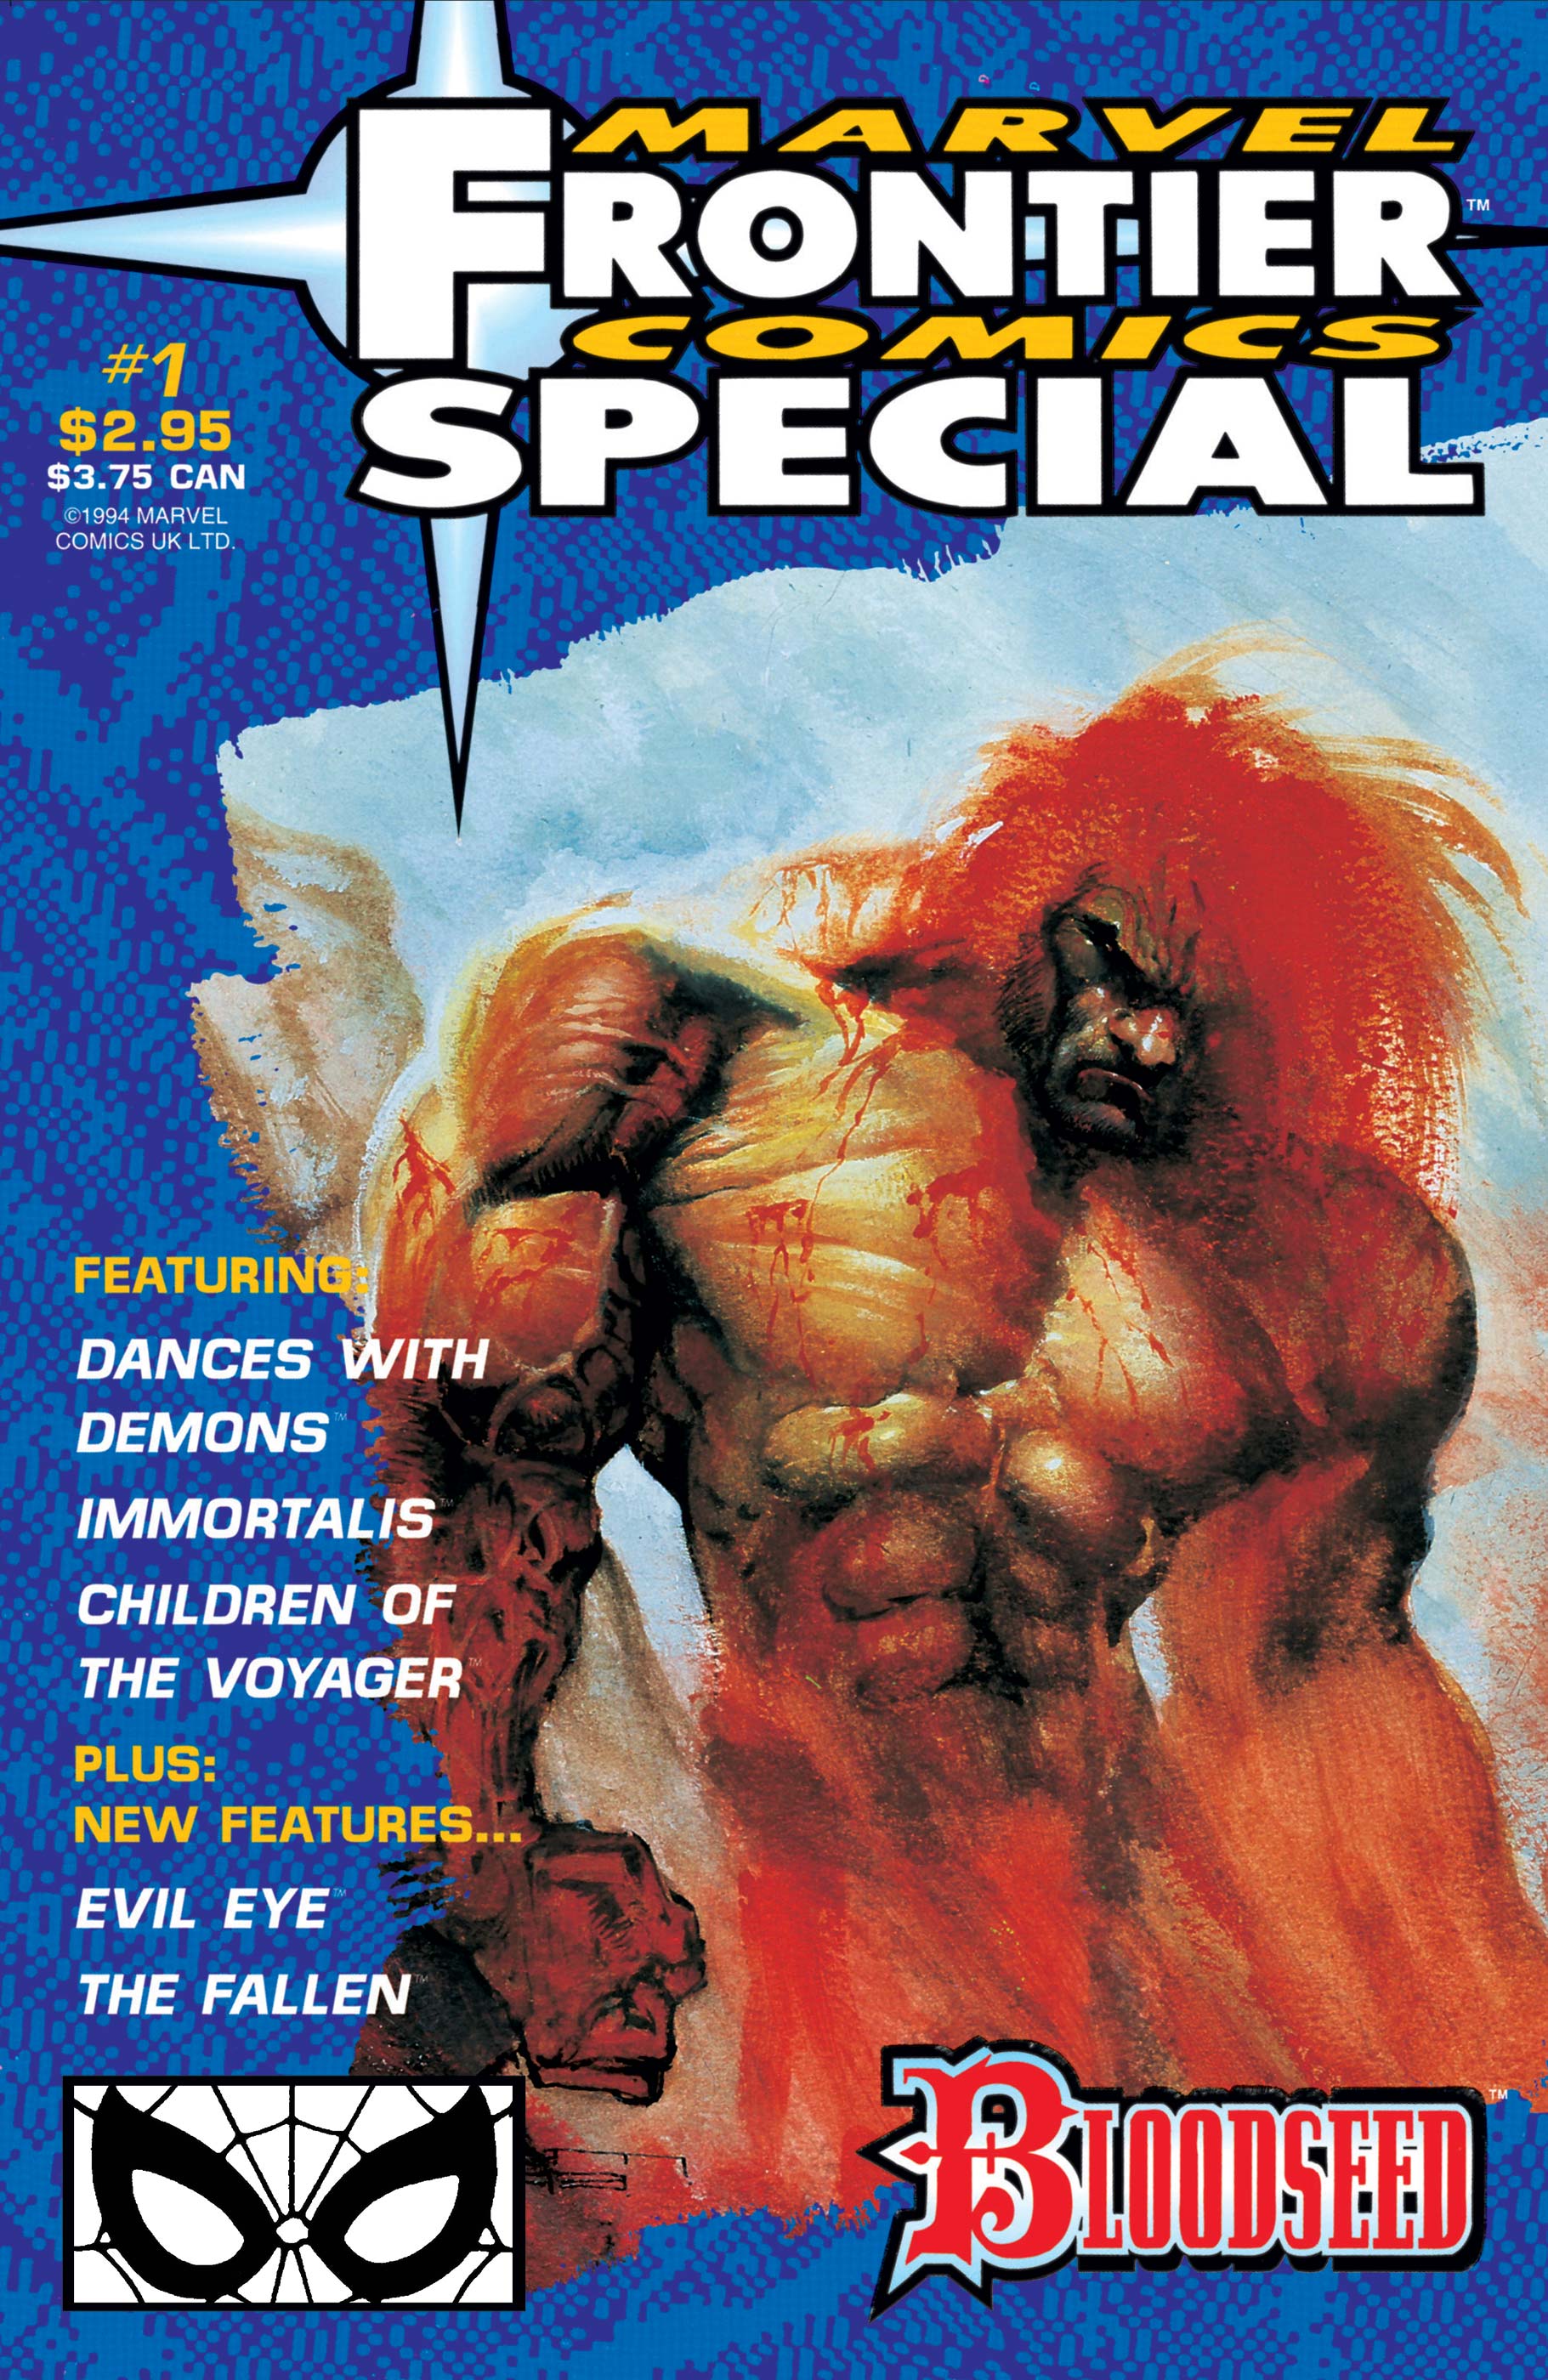 Marvel Frontier Comics Unlimited (1994) #1